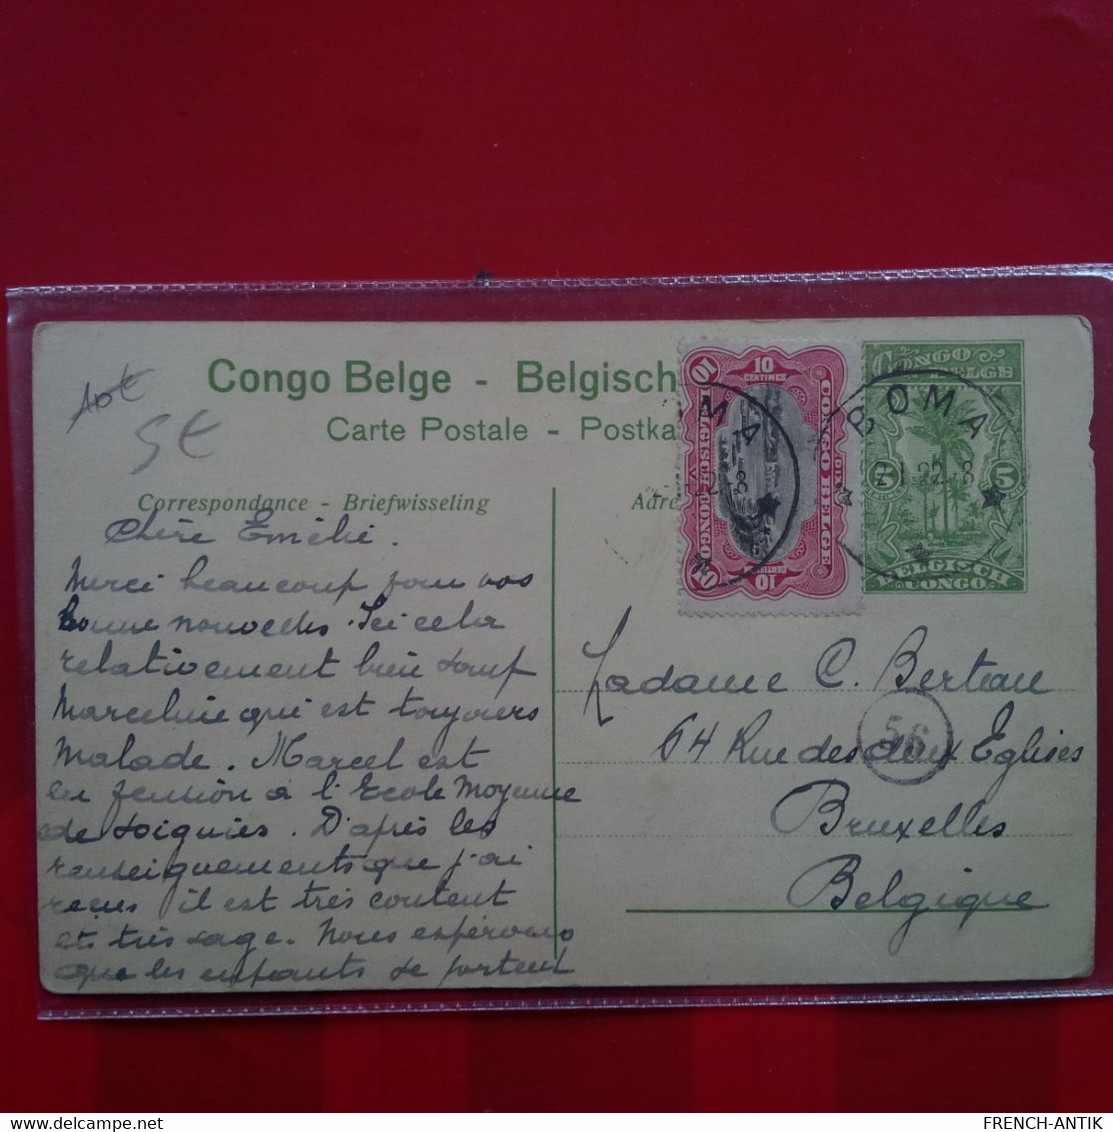 CONGO BELGE LES RAPIDES DU CONGO A SA SORTIE DU STANLEY POOL - Congo Belge